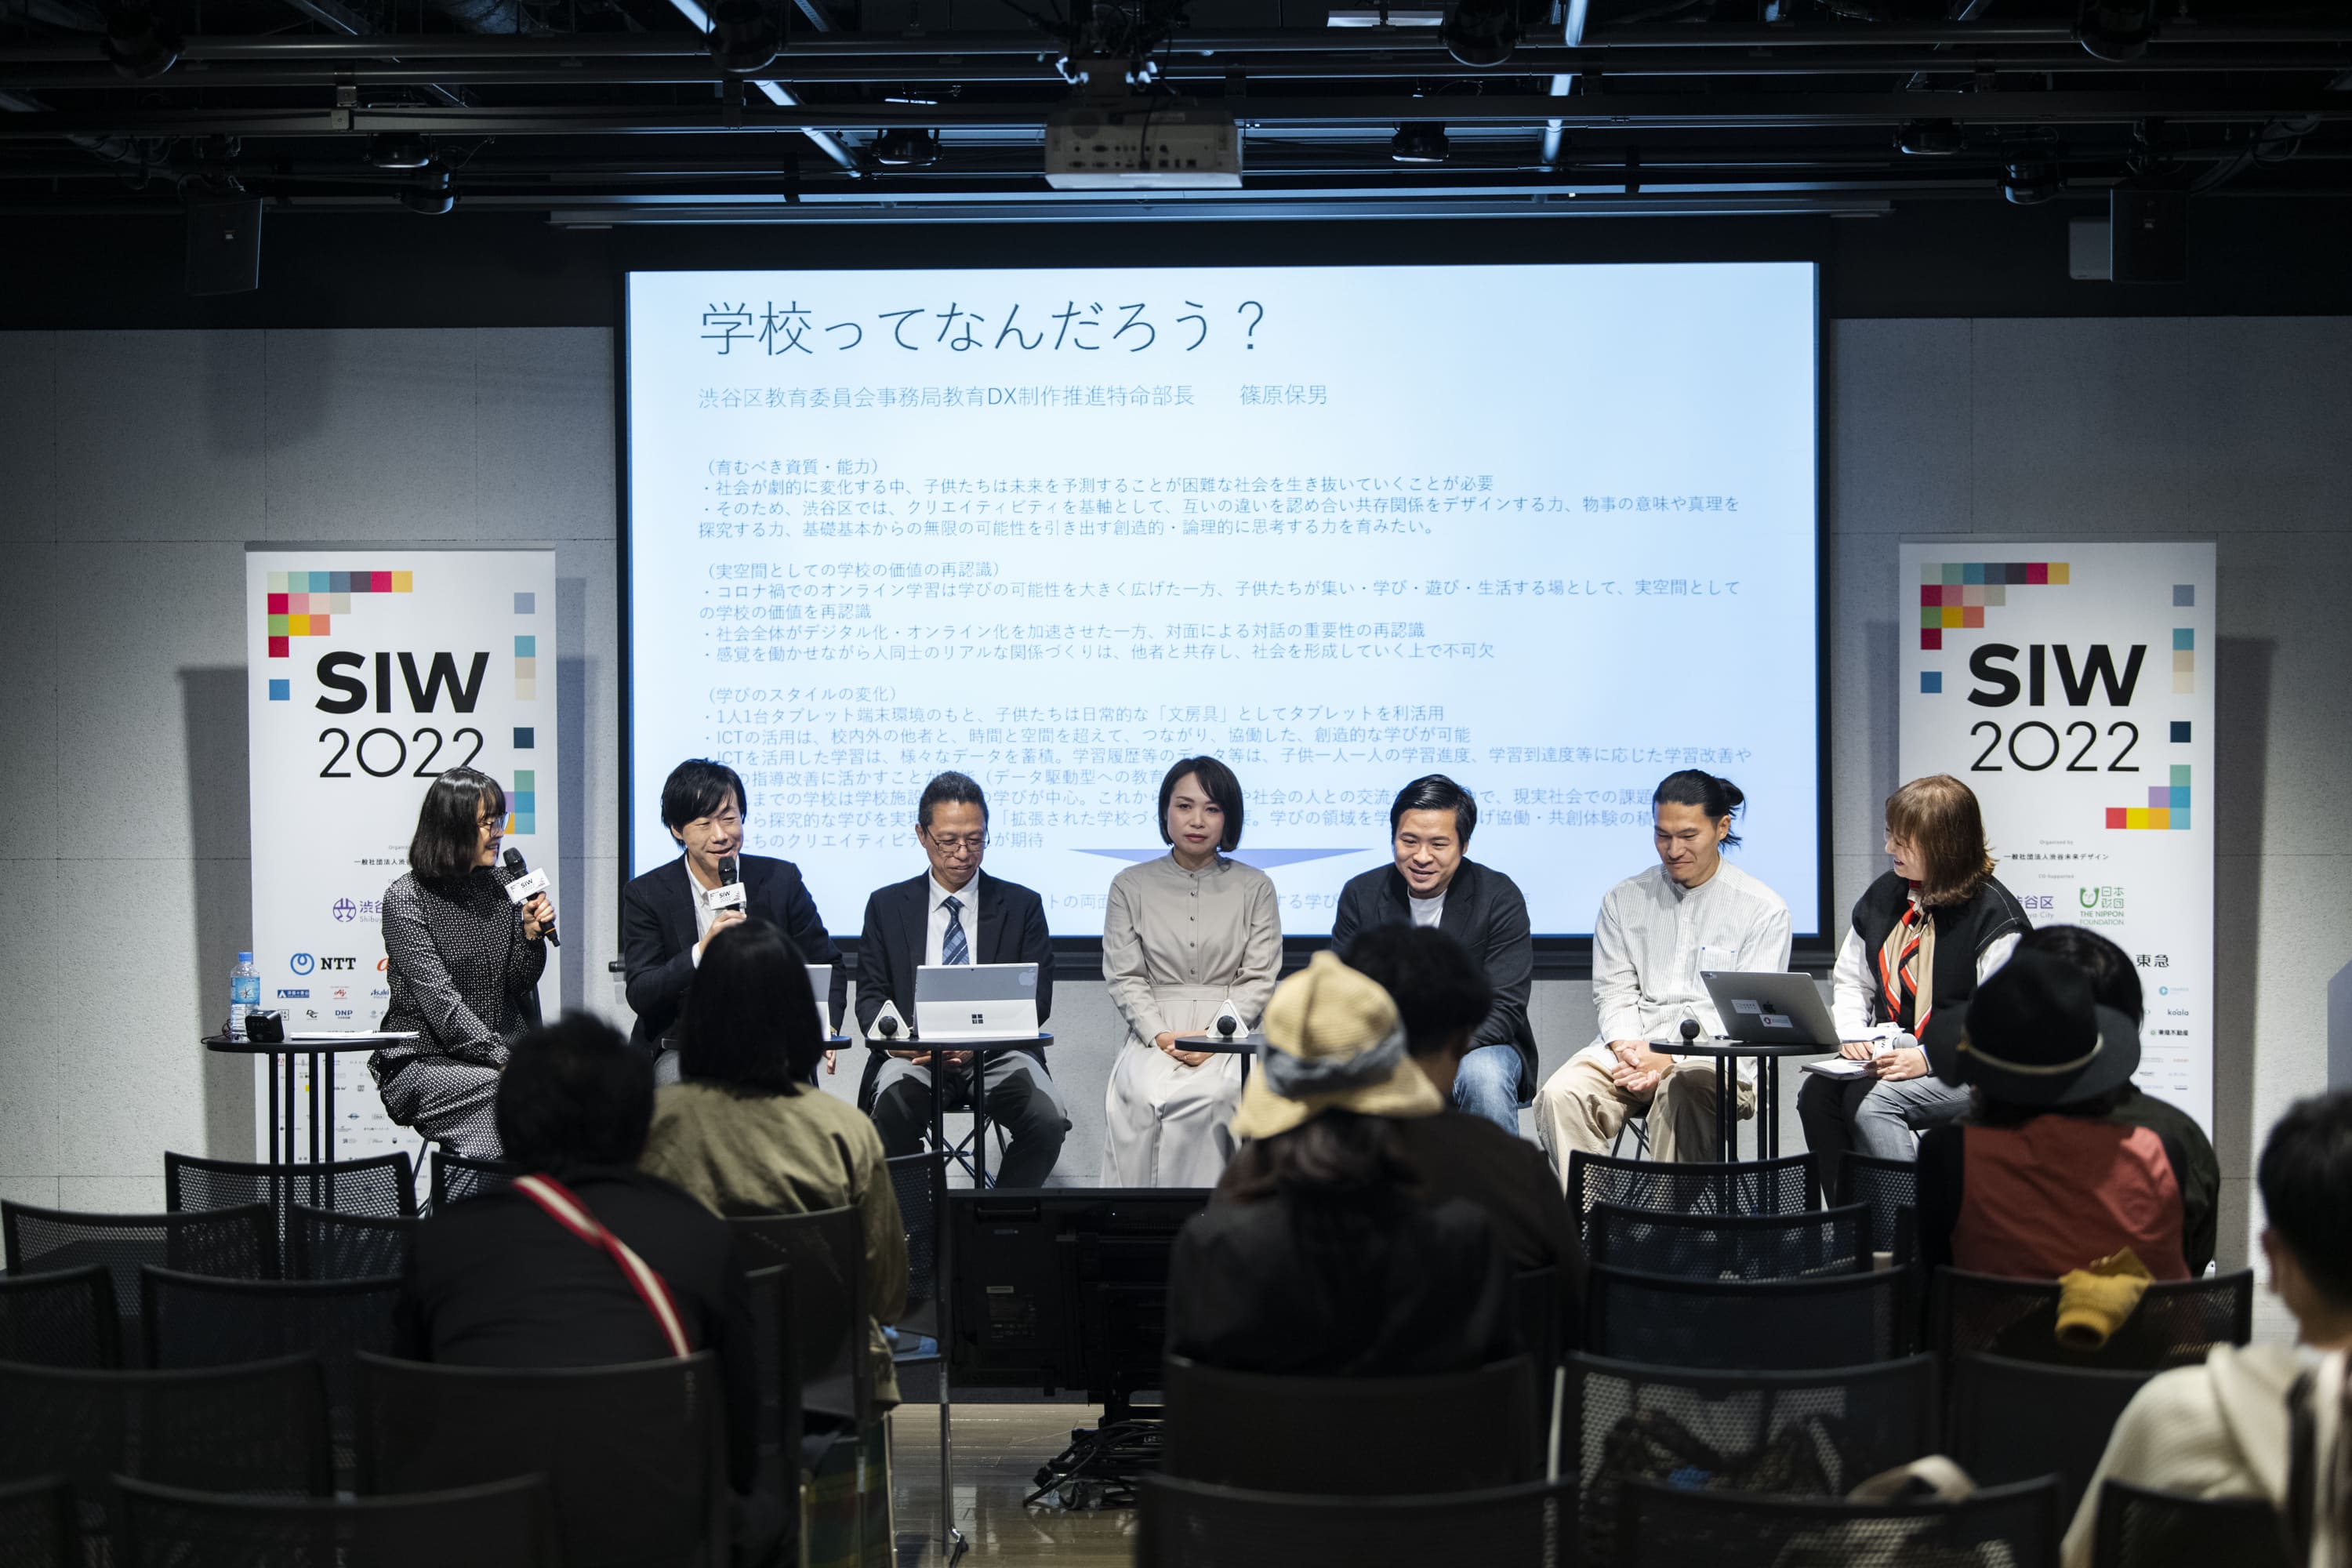 SAI6476-2 延べ13万人が参加 ！渋谷アイデア会議「SIW2022」が閉幕。80プログラムのアーカイブを無料公開中